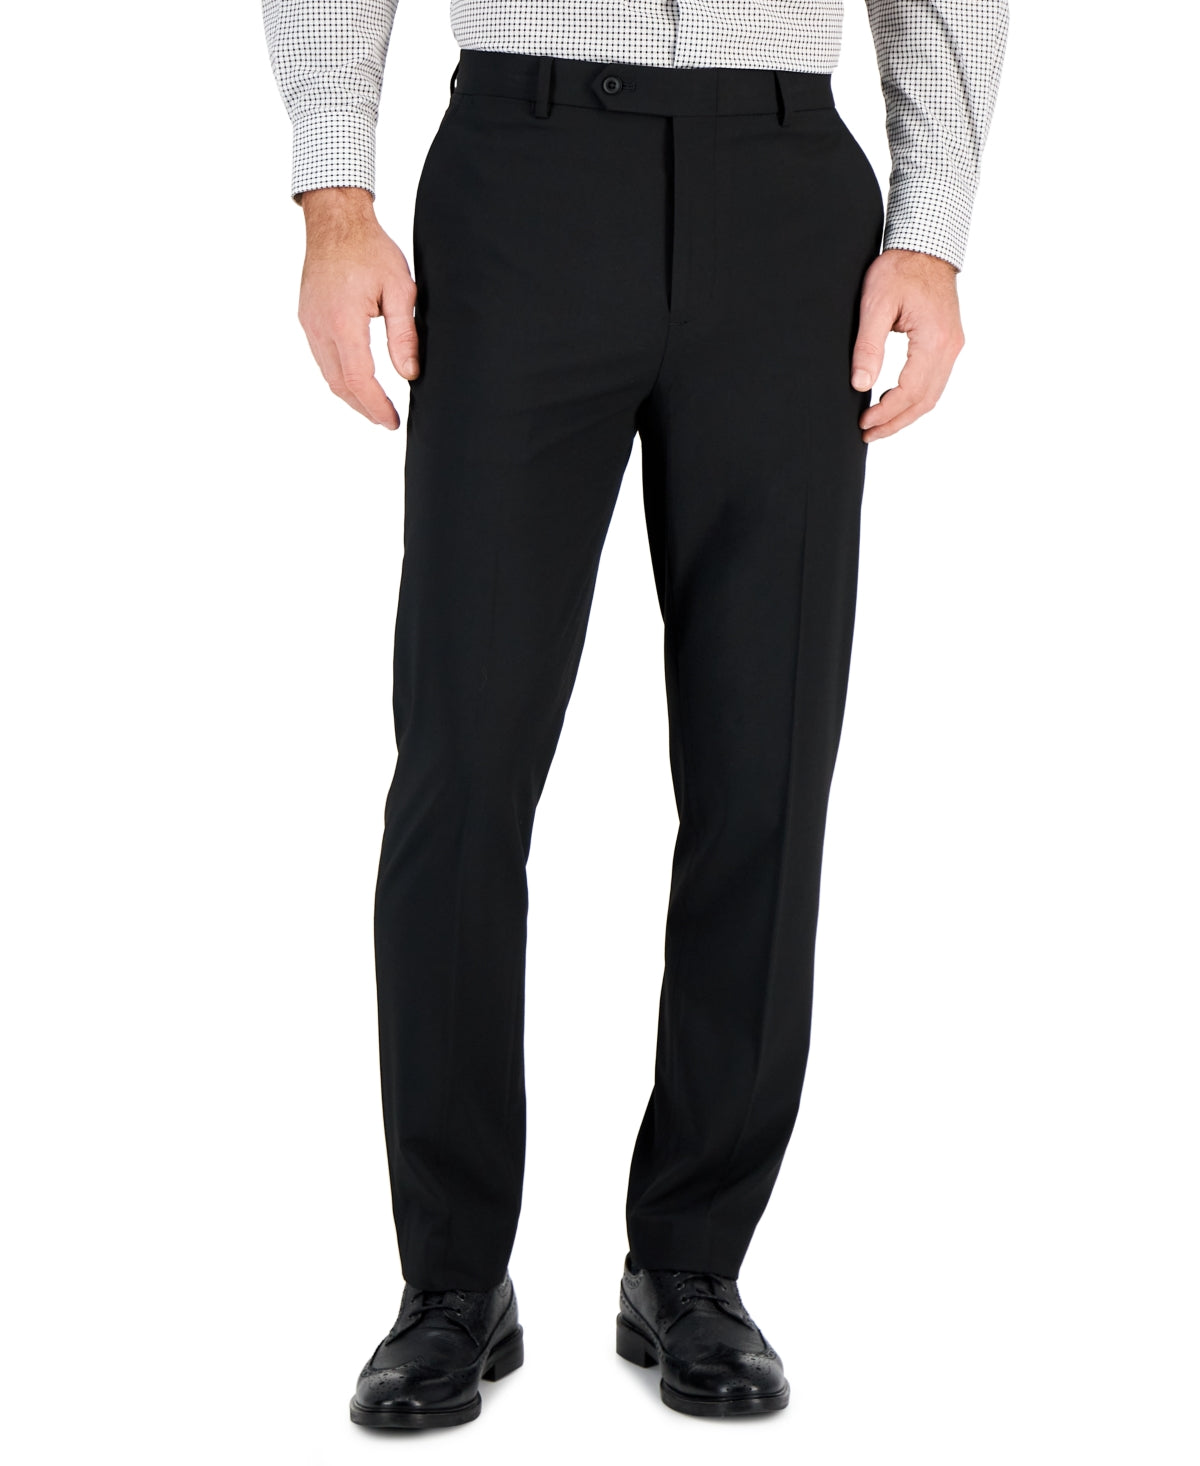 VINCE CAMUTO Men's Suit Pants Black 33 x 30 Slim-Fit Spandex Super-Stretch